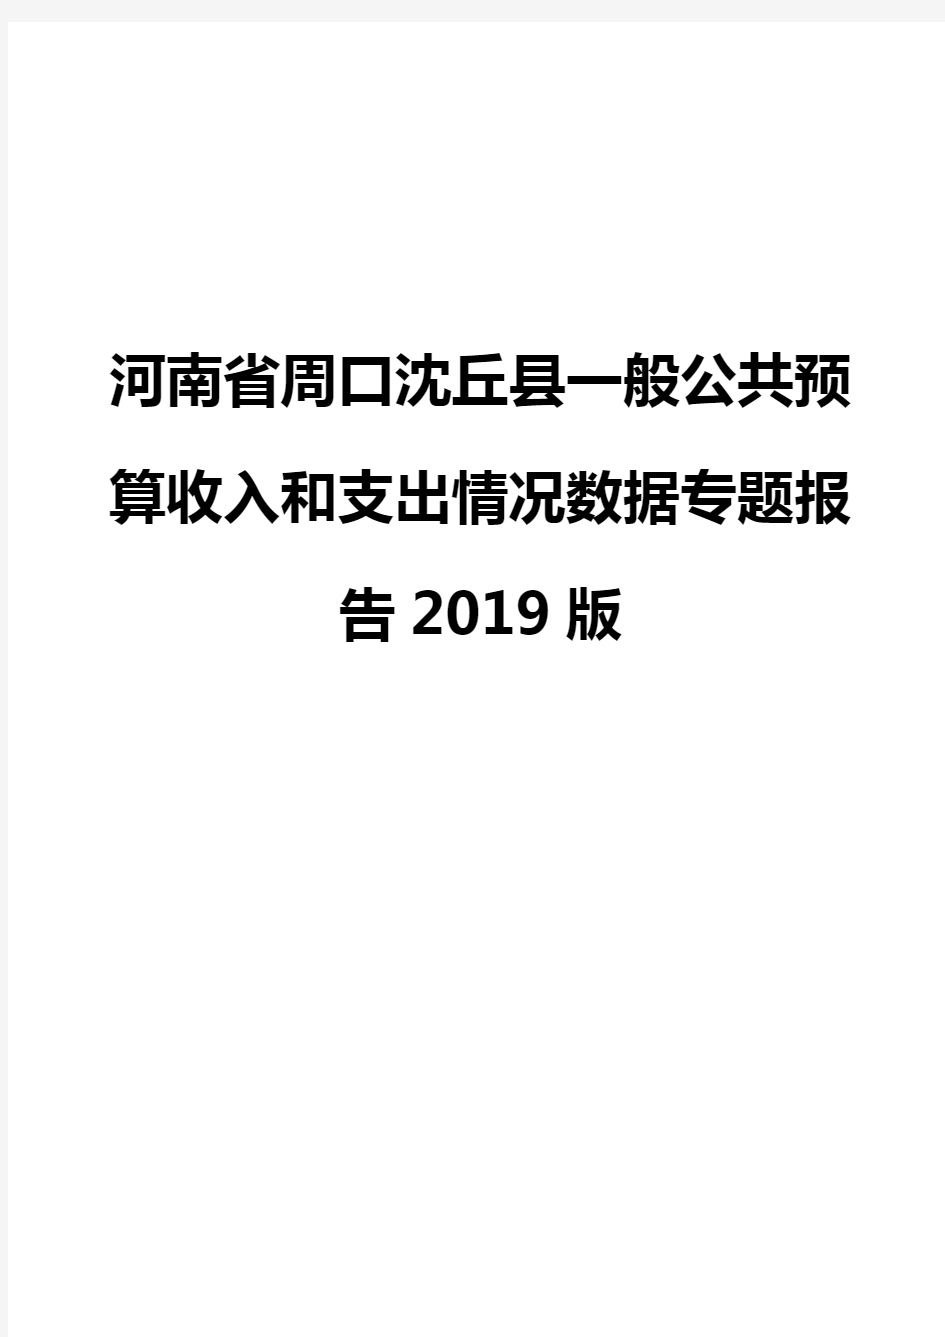 河南省周口沈丘县一般公共预算收入和支出情况数据专题报告2019版